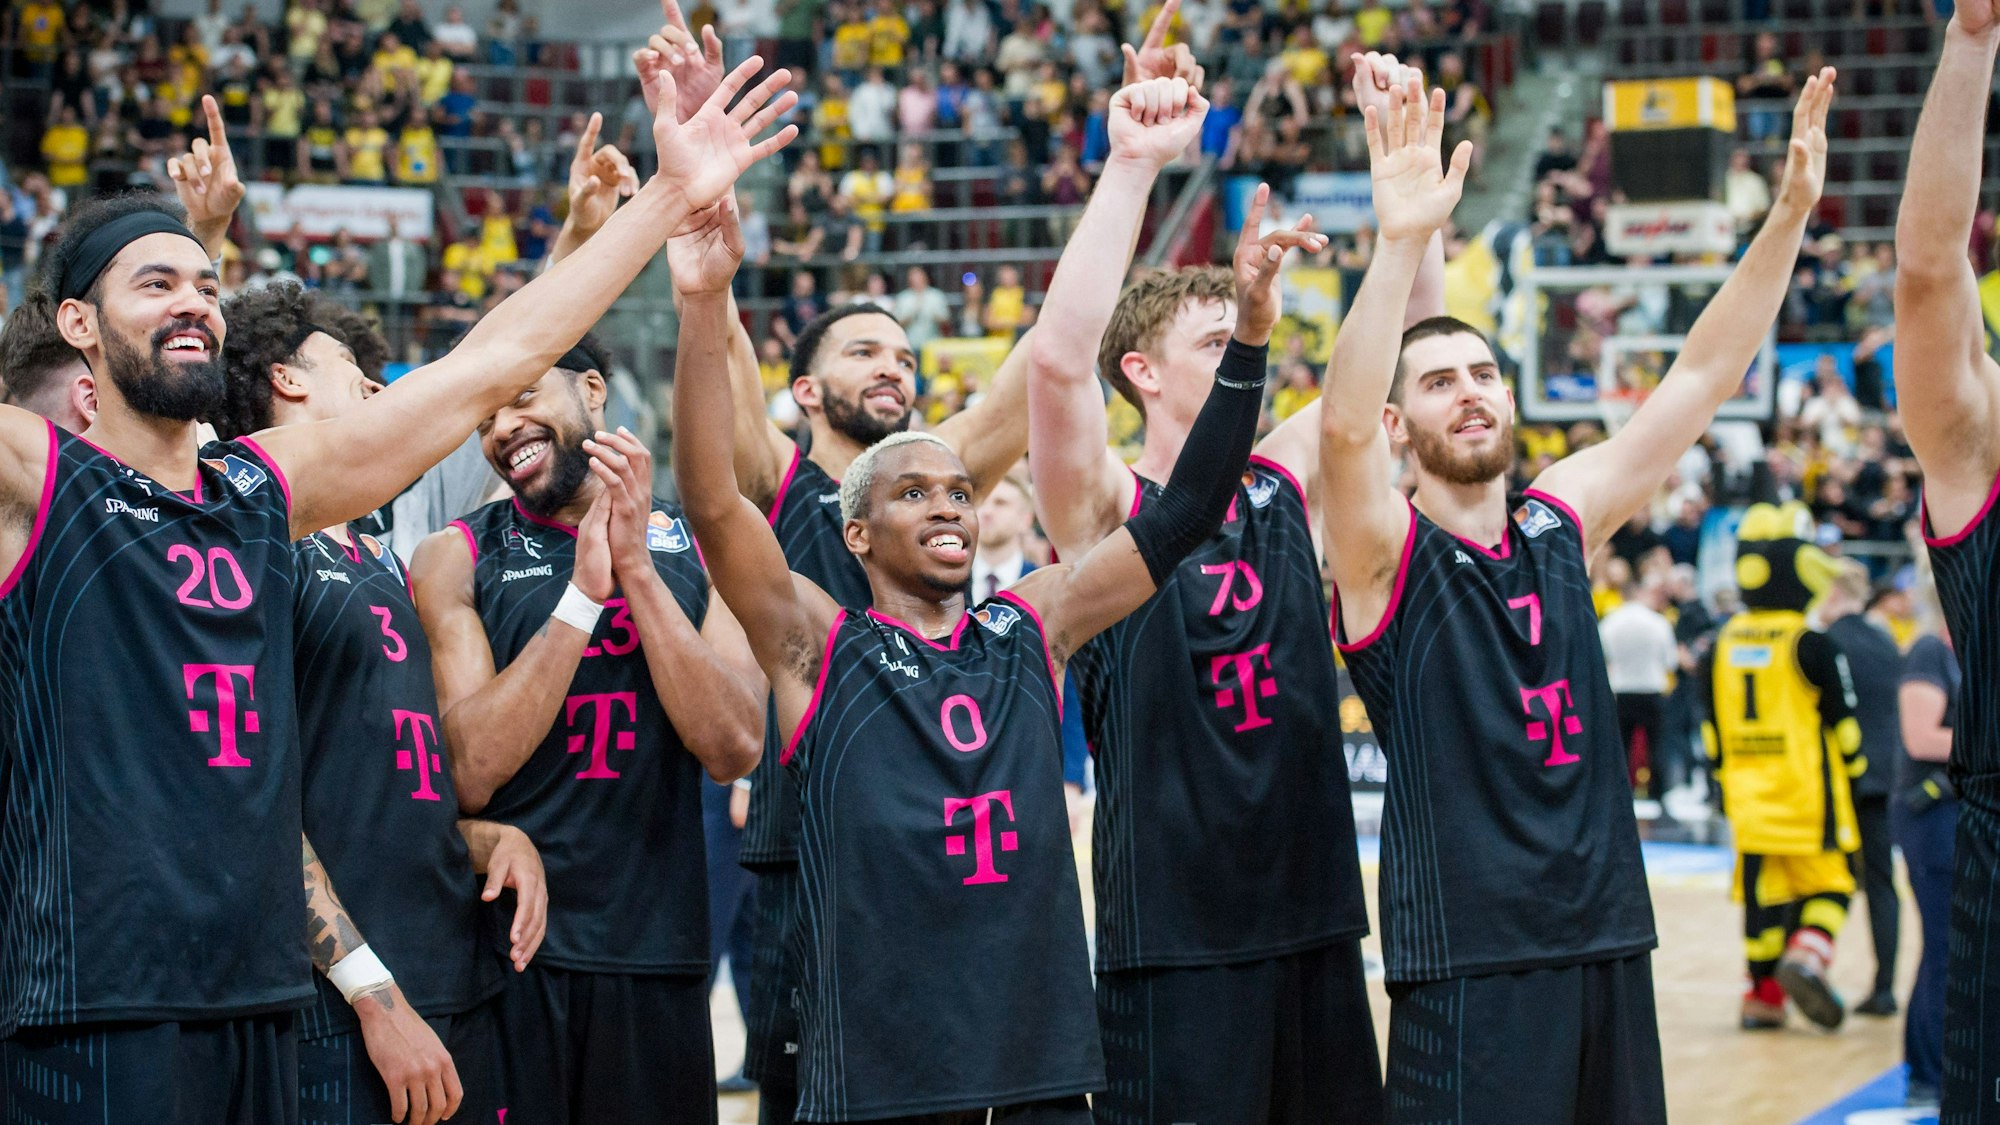 Jubel bei den Baskets: Mit dem Sieg in Ludwigsburg haben sie sich für die Play-off-Finals qualifiziert. Spieler stehen mit augebreiteten Armen und glücklichen Gesichtern nebeneinander.